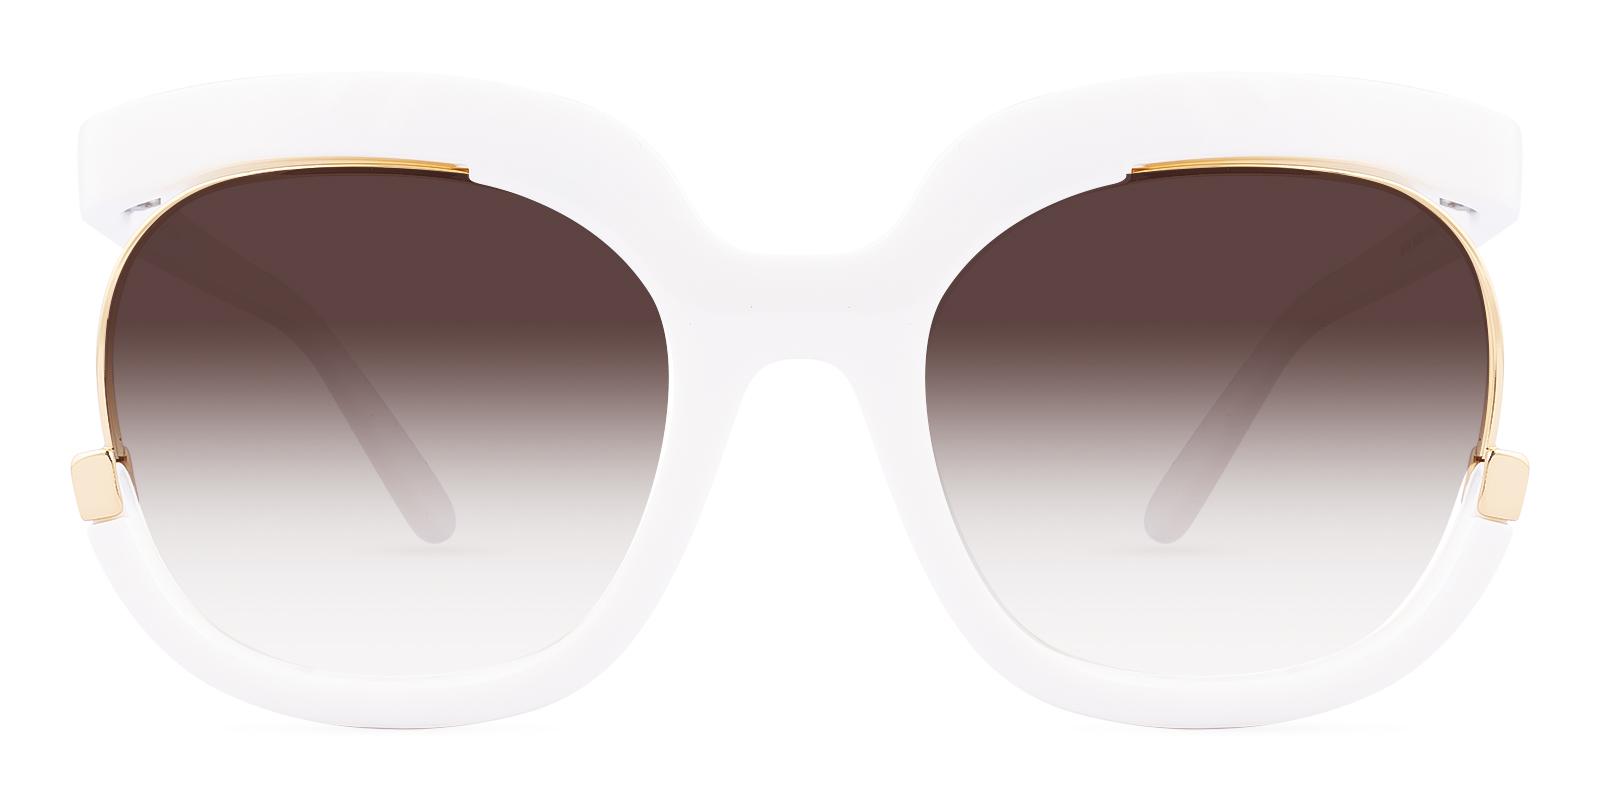 Elseit White Plastic Sunglasses , UniversalBridgeFit Frames from ABBE Glasses